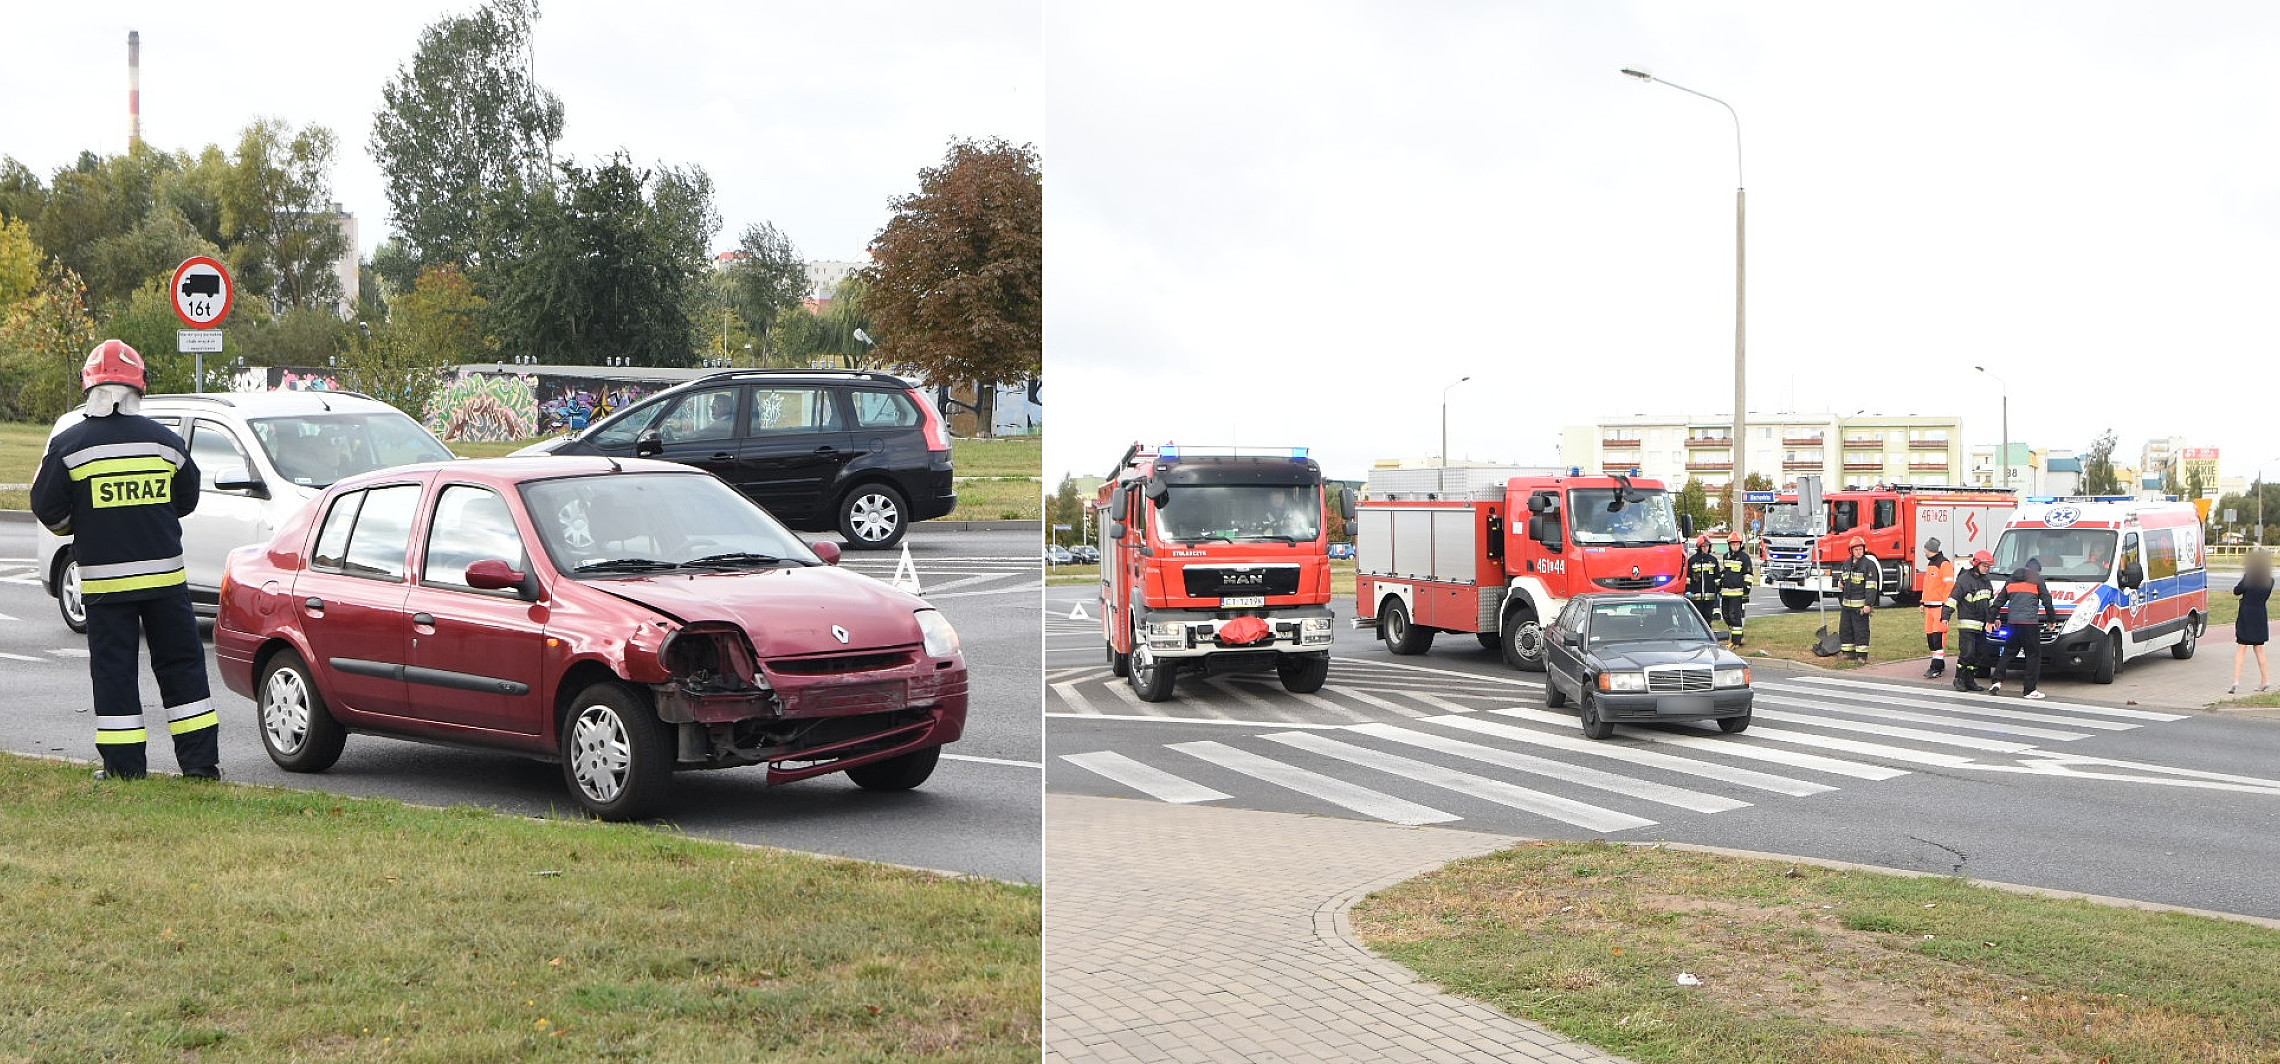 Inowrocław - Plaga kolizji i wypadków na drogach